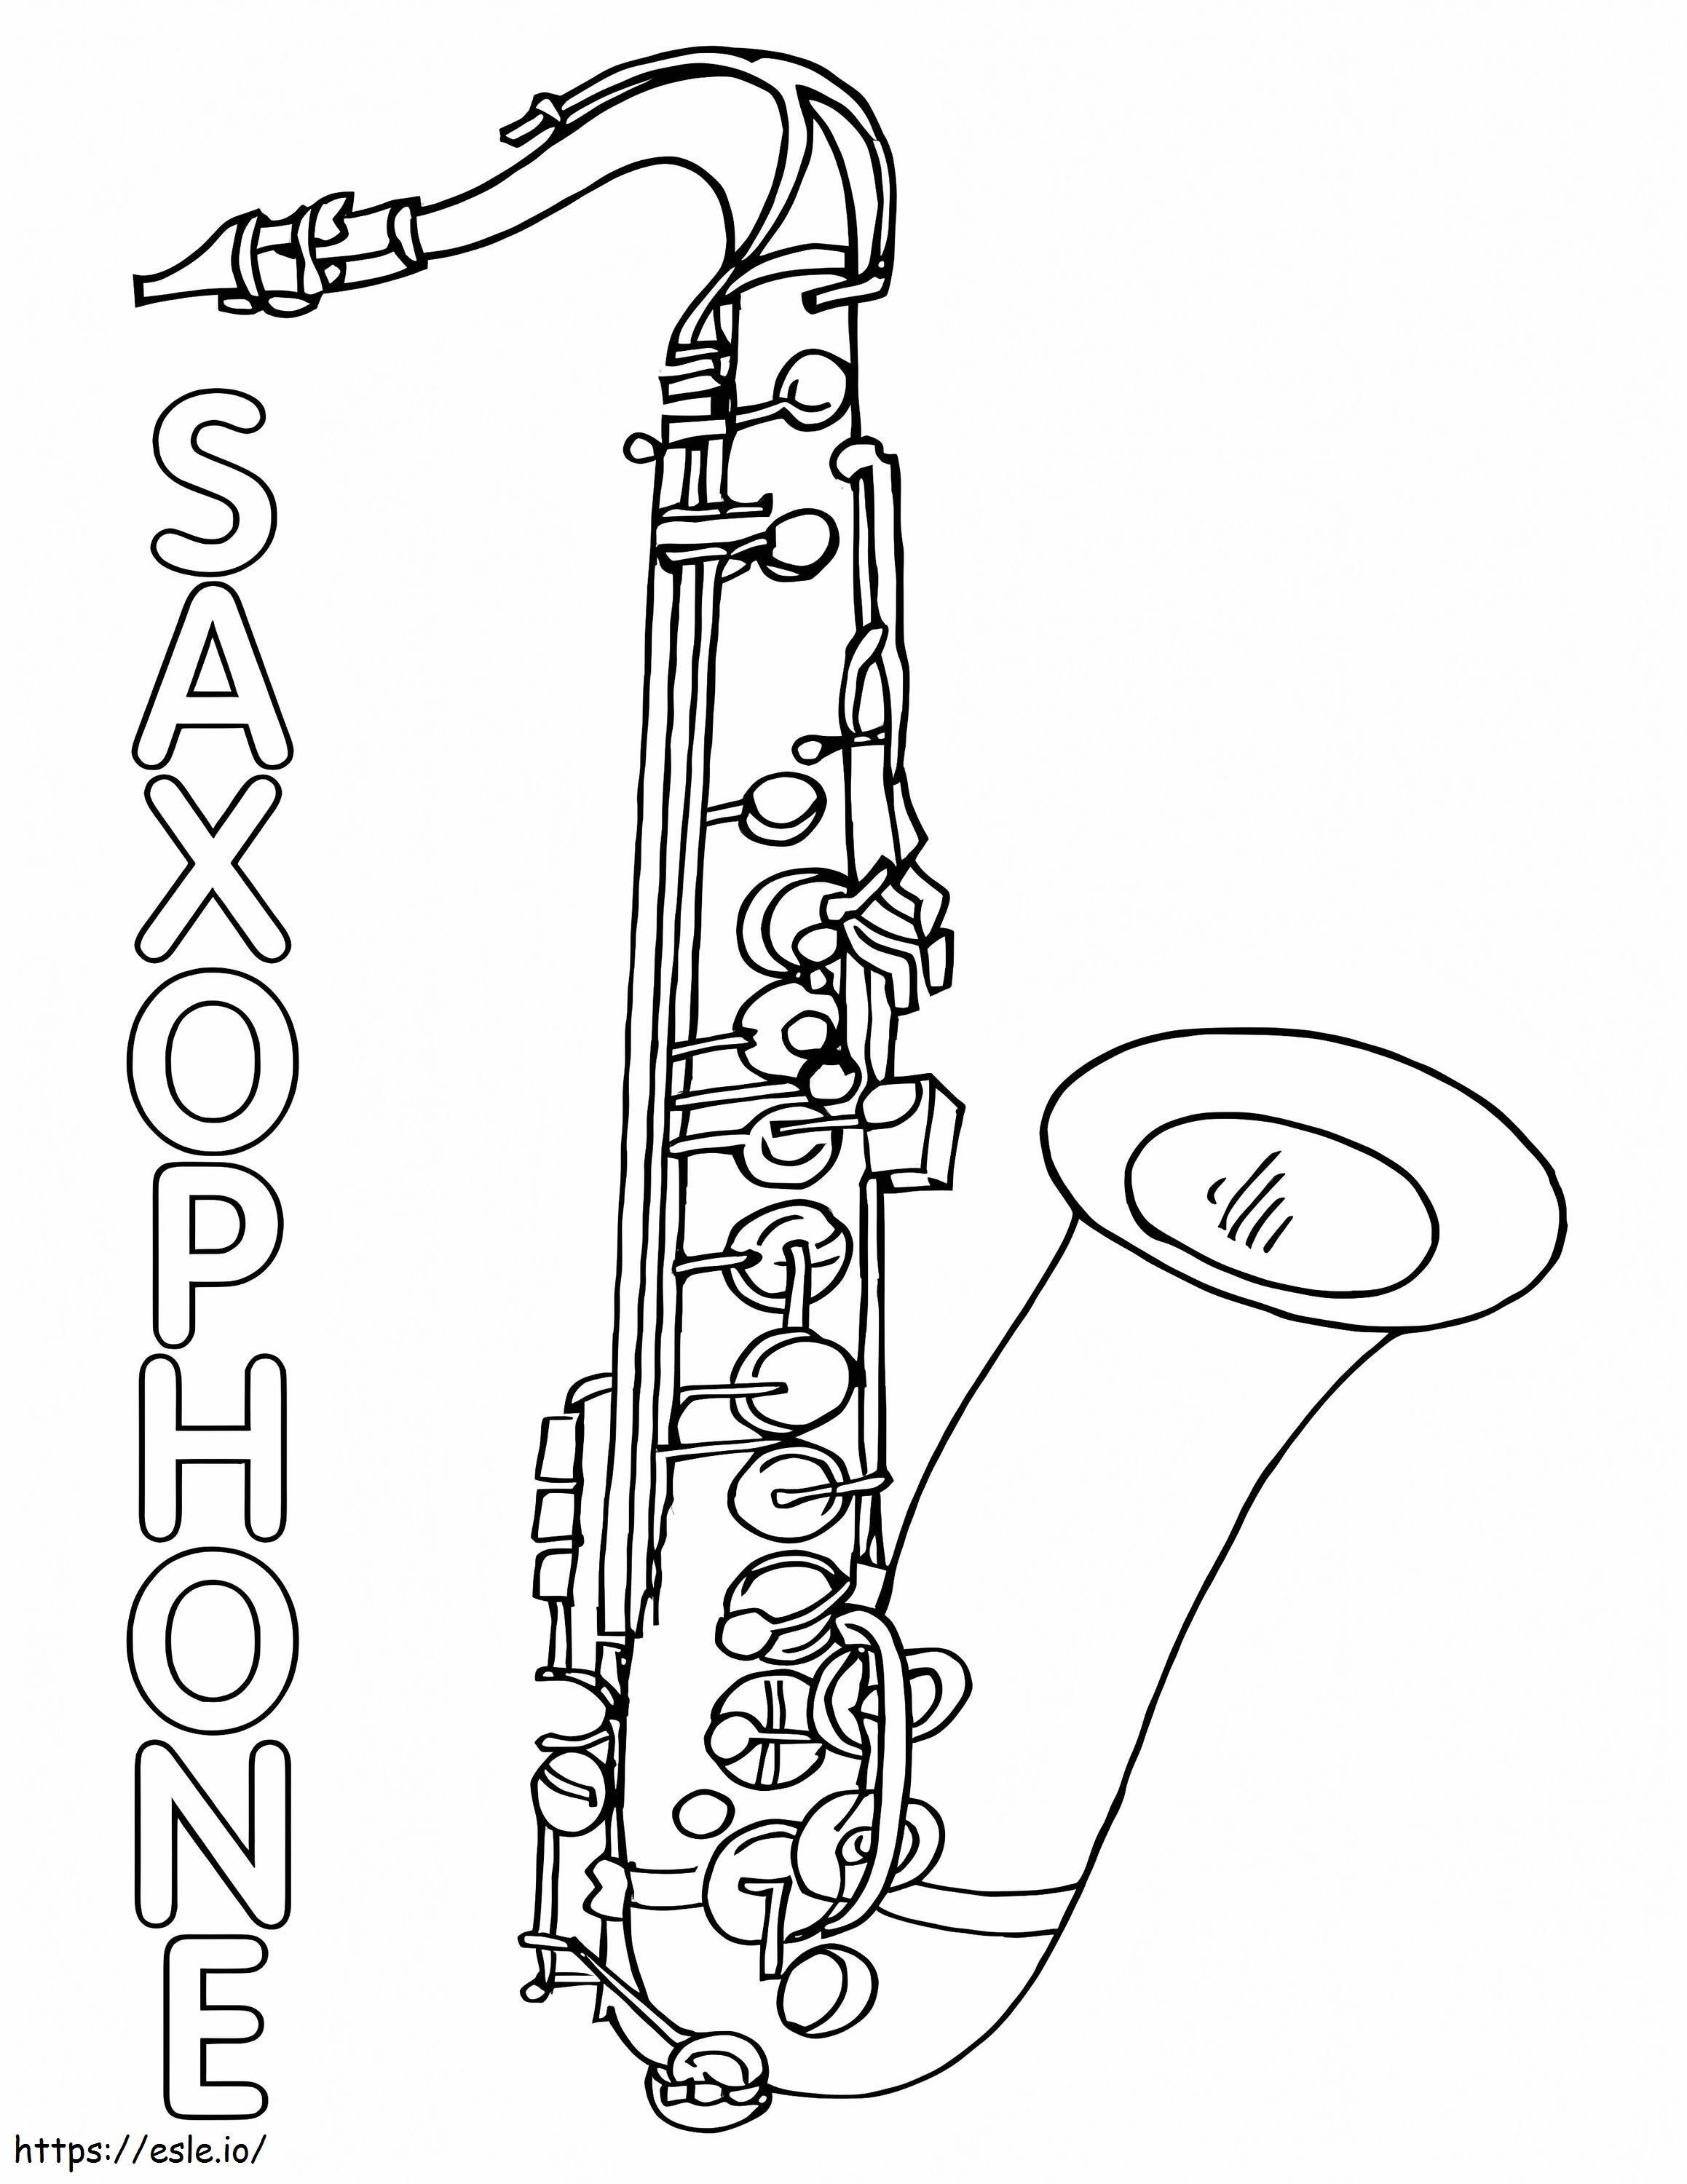 Normales Saxophon 2 ausmalbilder